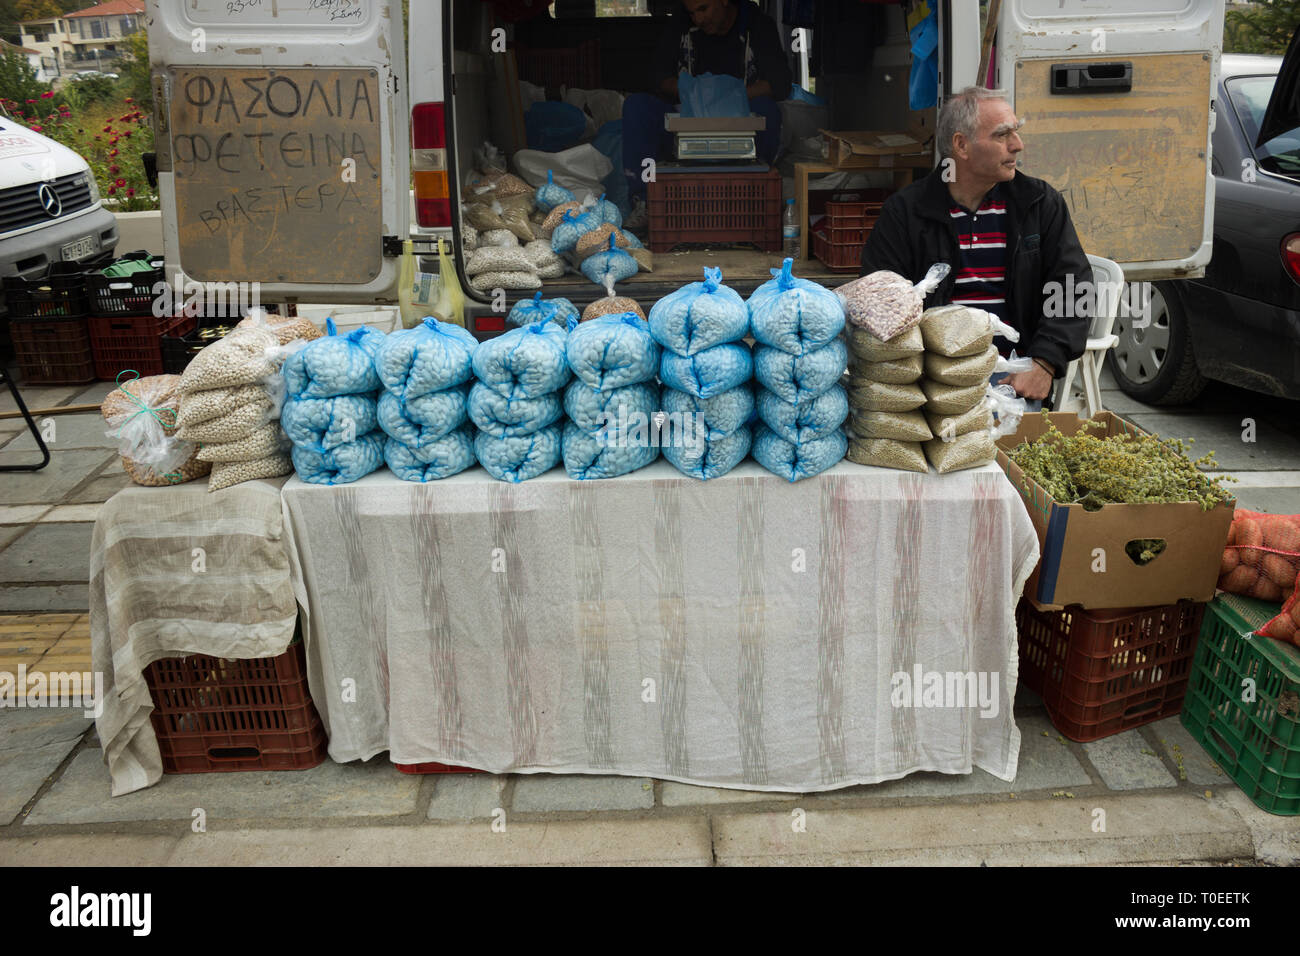 Exposant grec assis sur une chaise en attendant de vendre sa récolte de haricots beurre aux clients lors de l'assemblée annuelle du festival de châtaignes. Leivadi, Grèce Banque D'Images